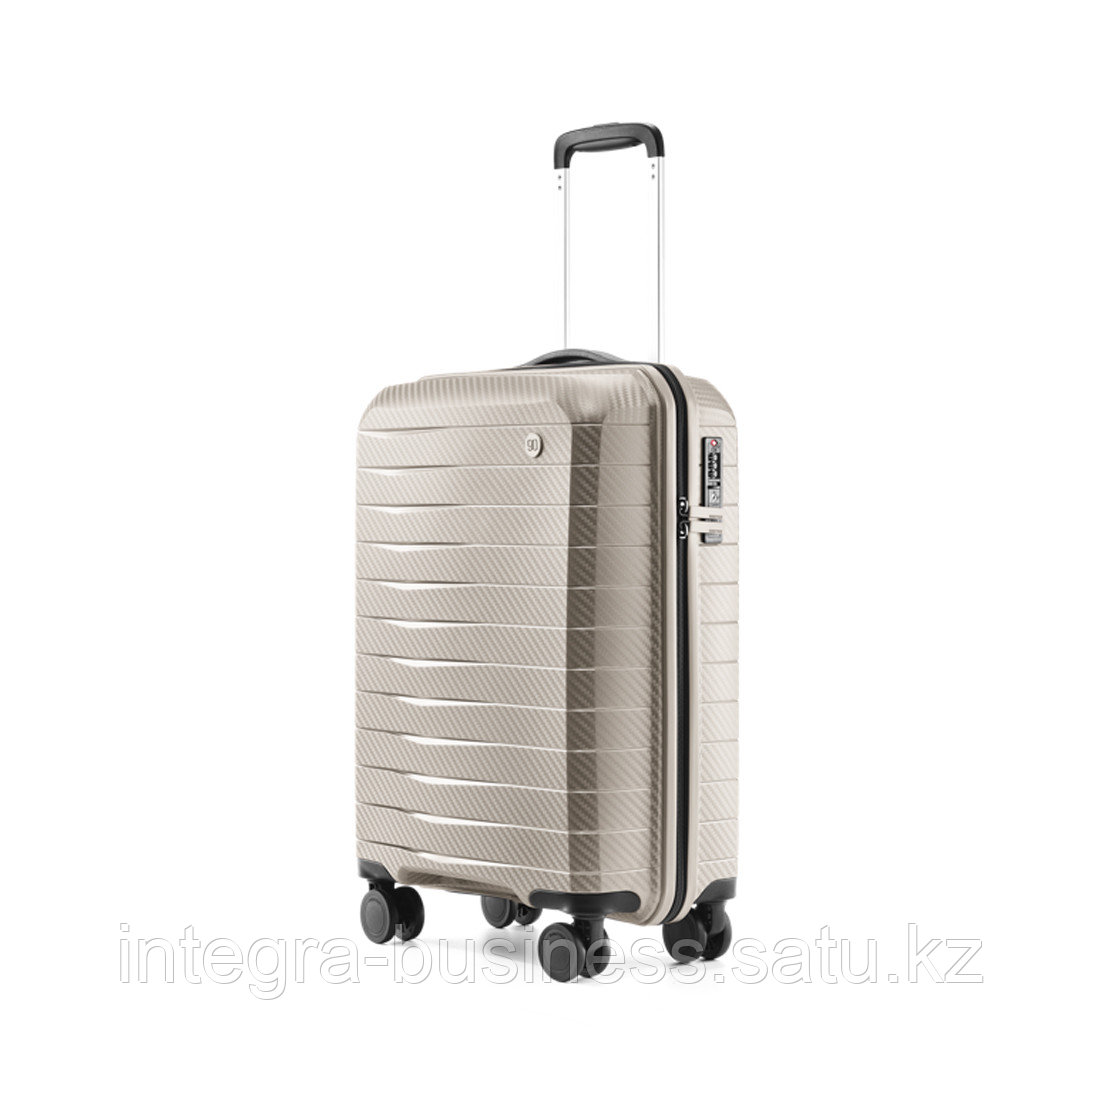 Чемодан NINETYGO Lightweight Luggage 24'' Белый